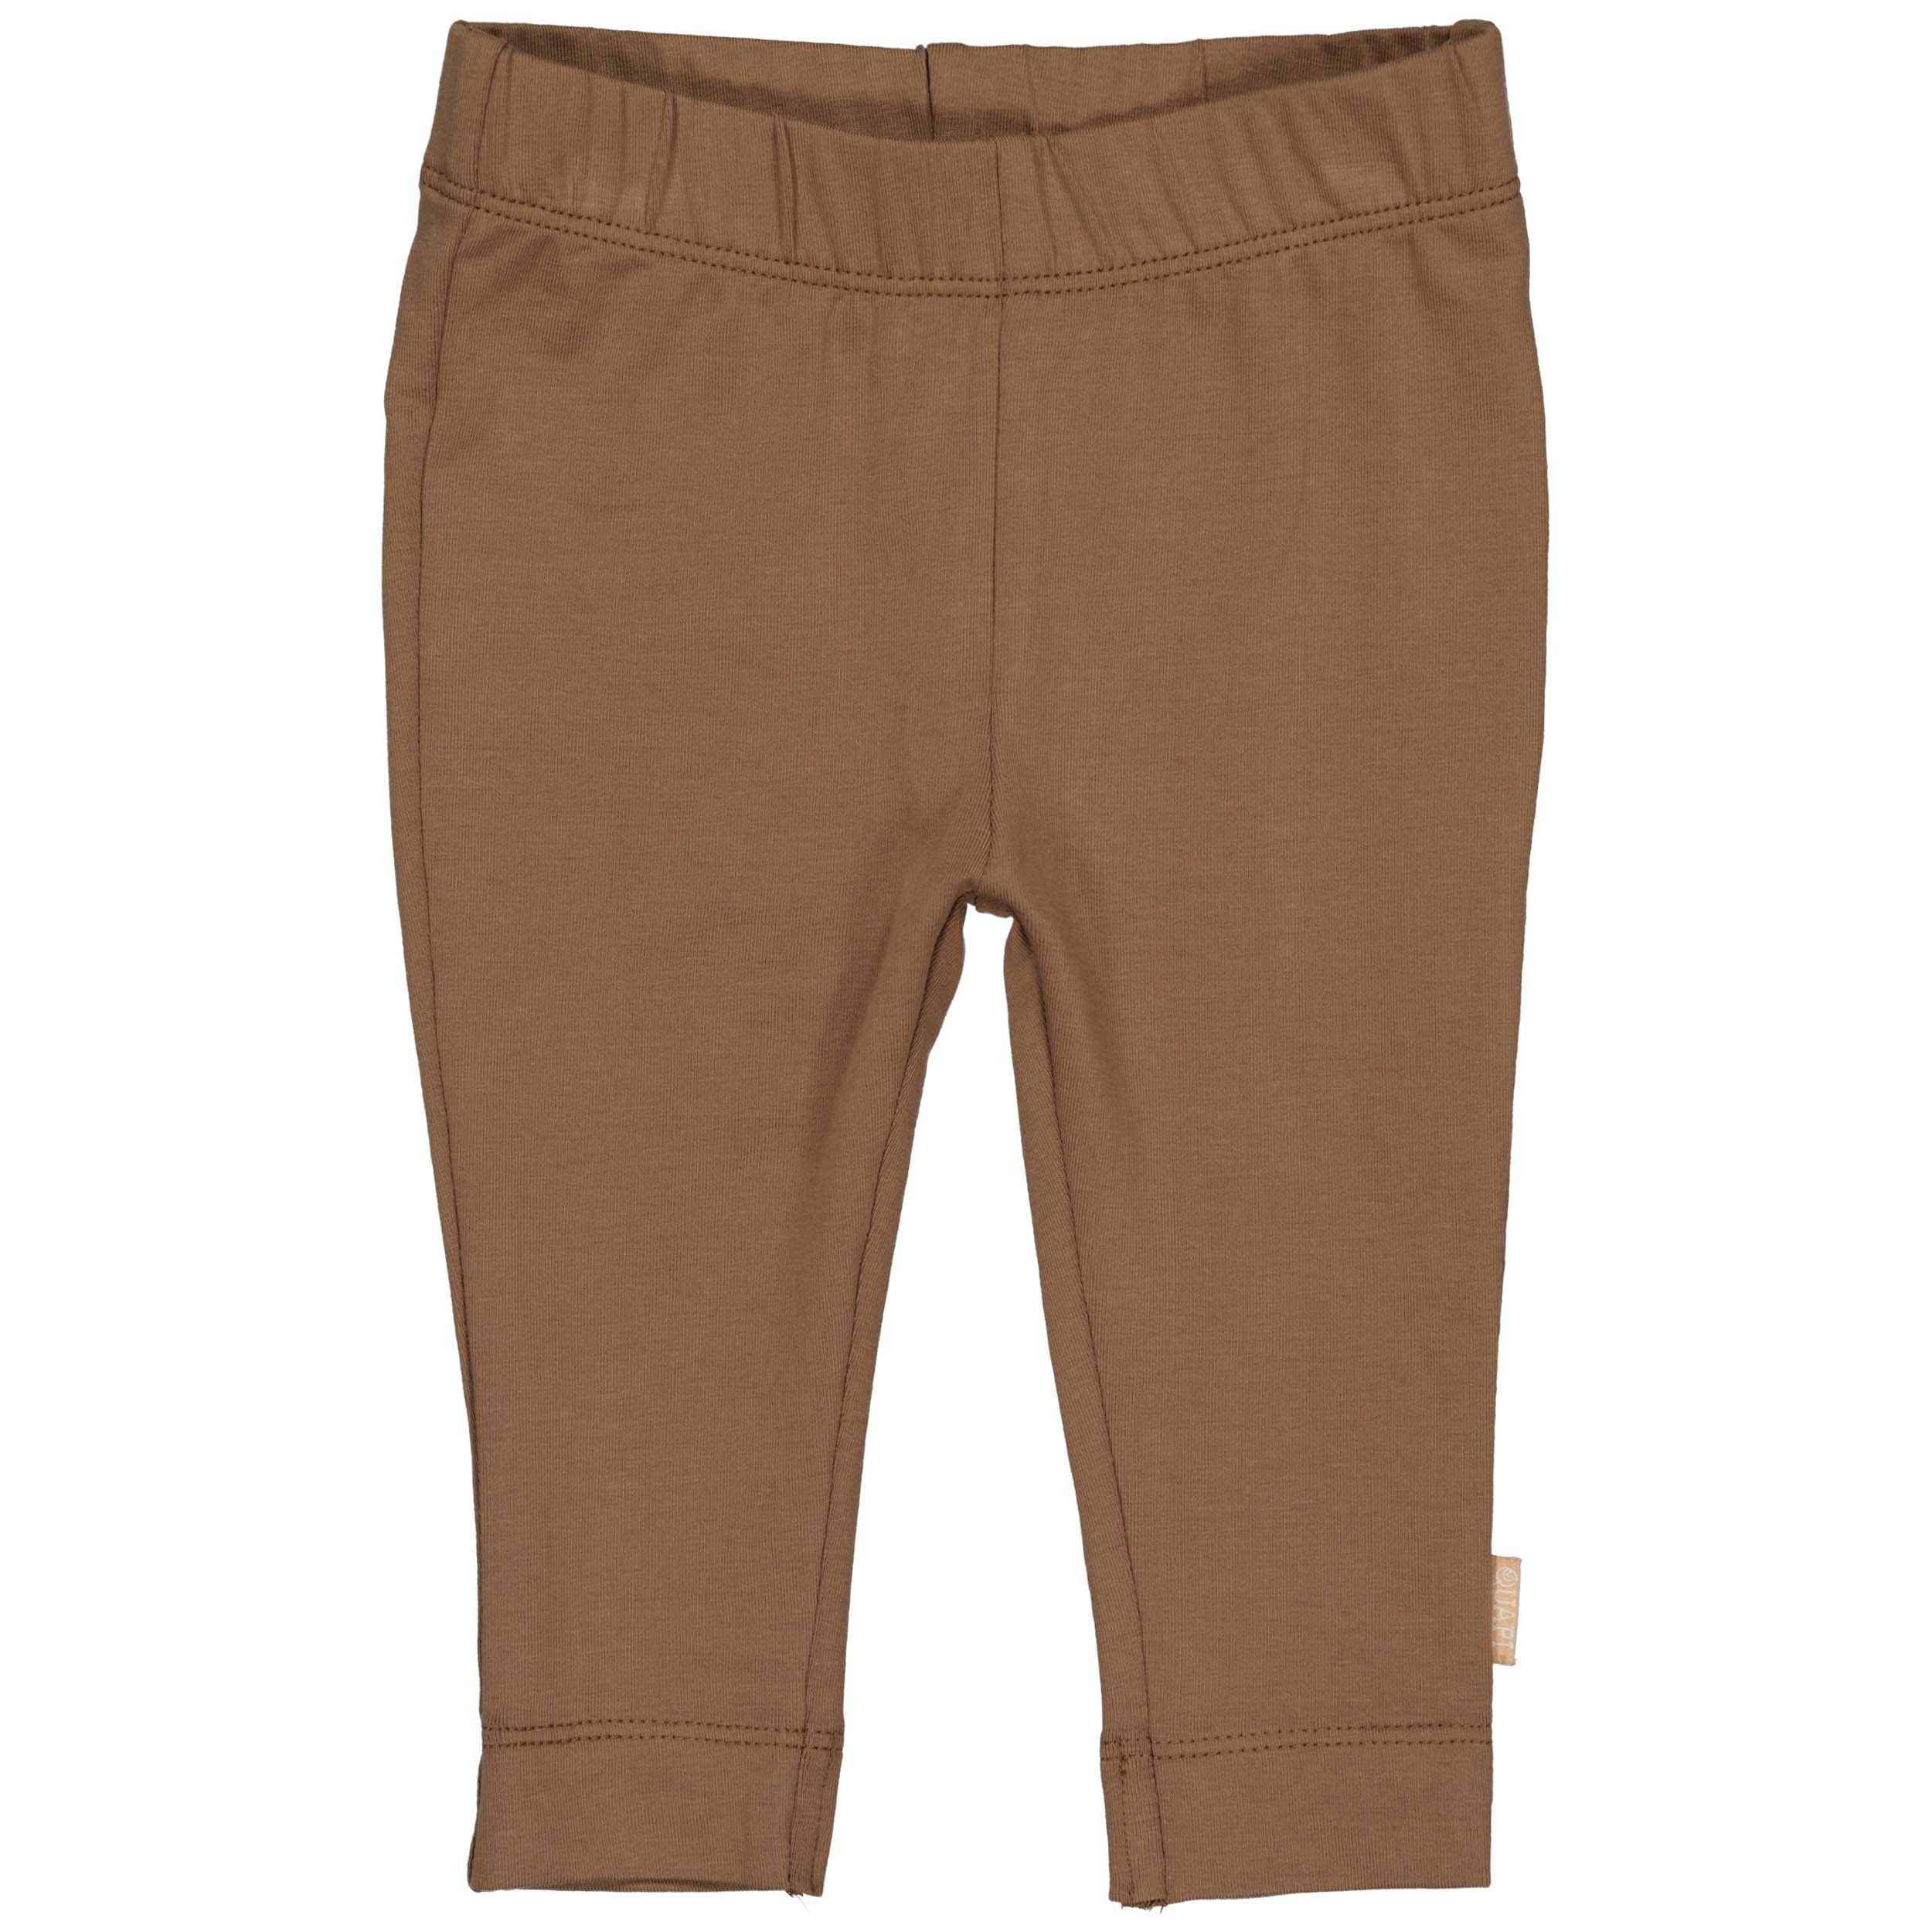 Jongens Pants CLYDEQNBW23 van Quapi Newborn in de kleur Brown Soft in maat 68.